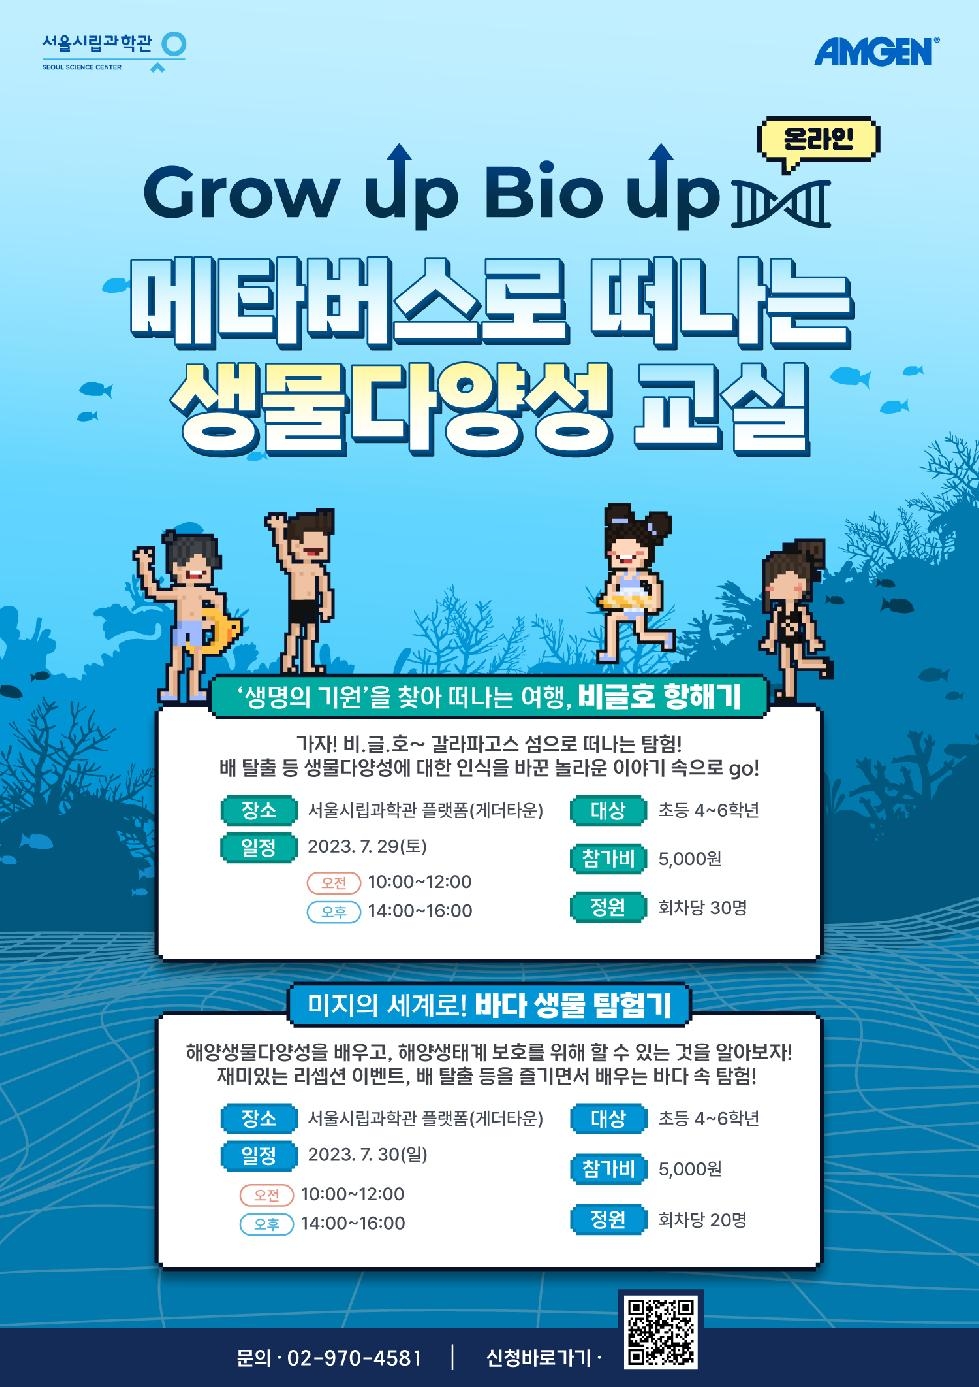 서울시, 체험형 생명과학교육 `그로우 업, 바이오 업`…7.10(월)부터